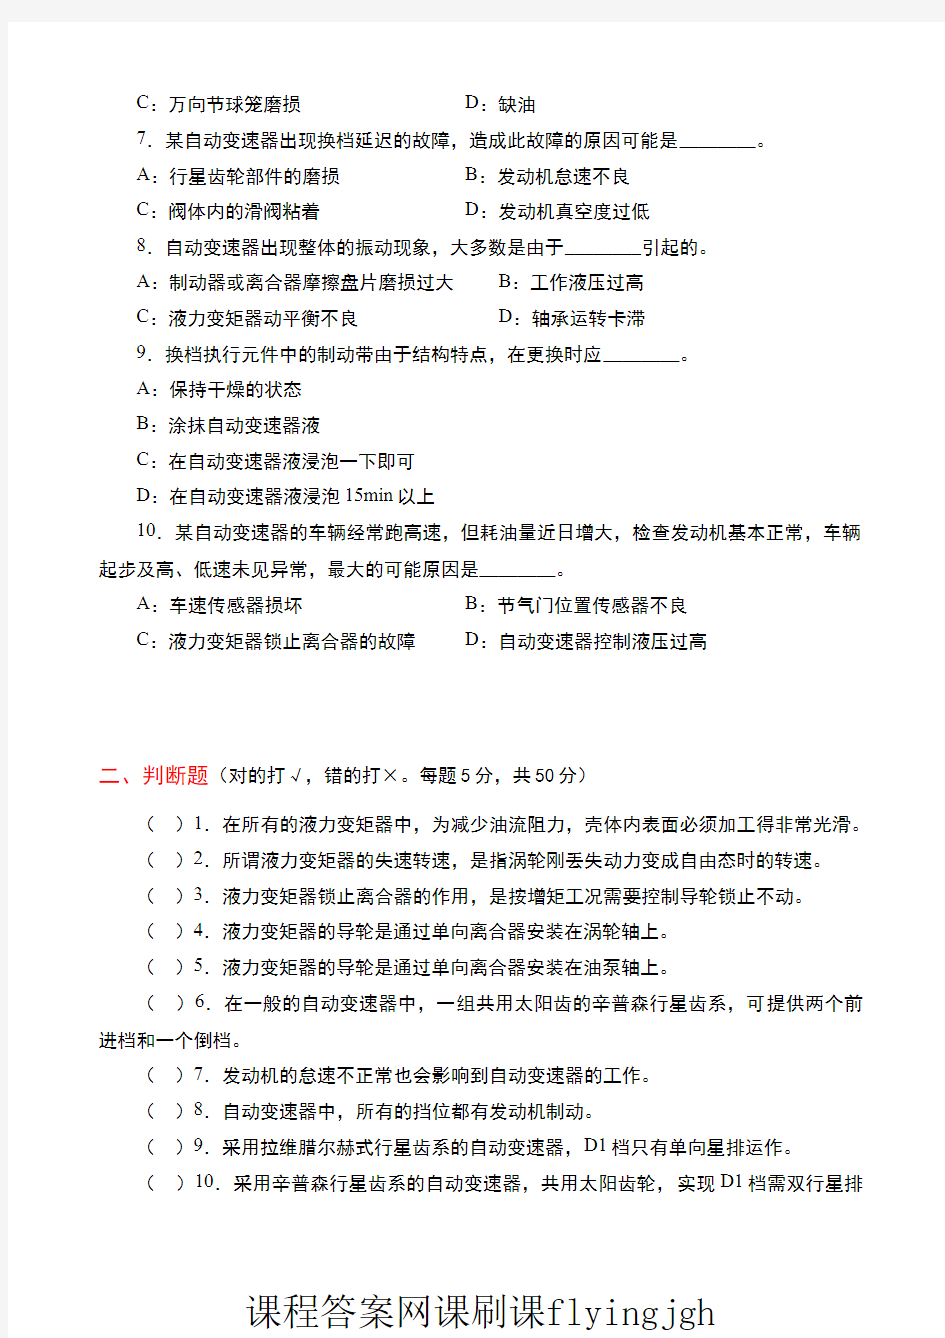 中国大学MOOC慕课爱课程(3)--情境一考试试卷3及参考答案网课刷课挂课